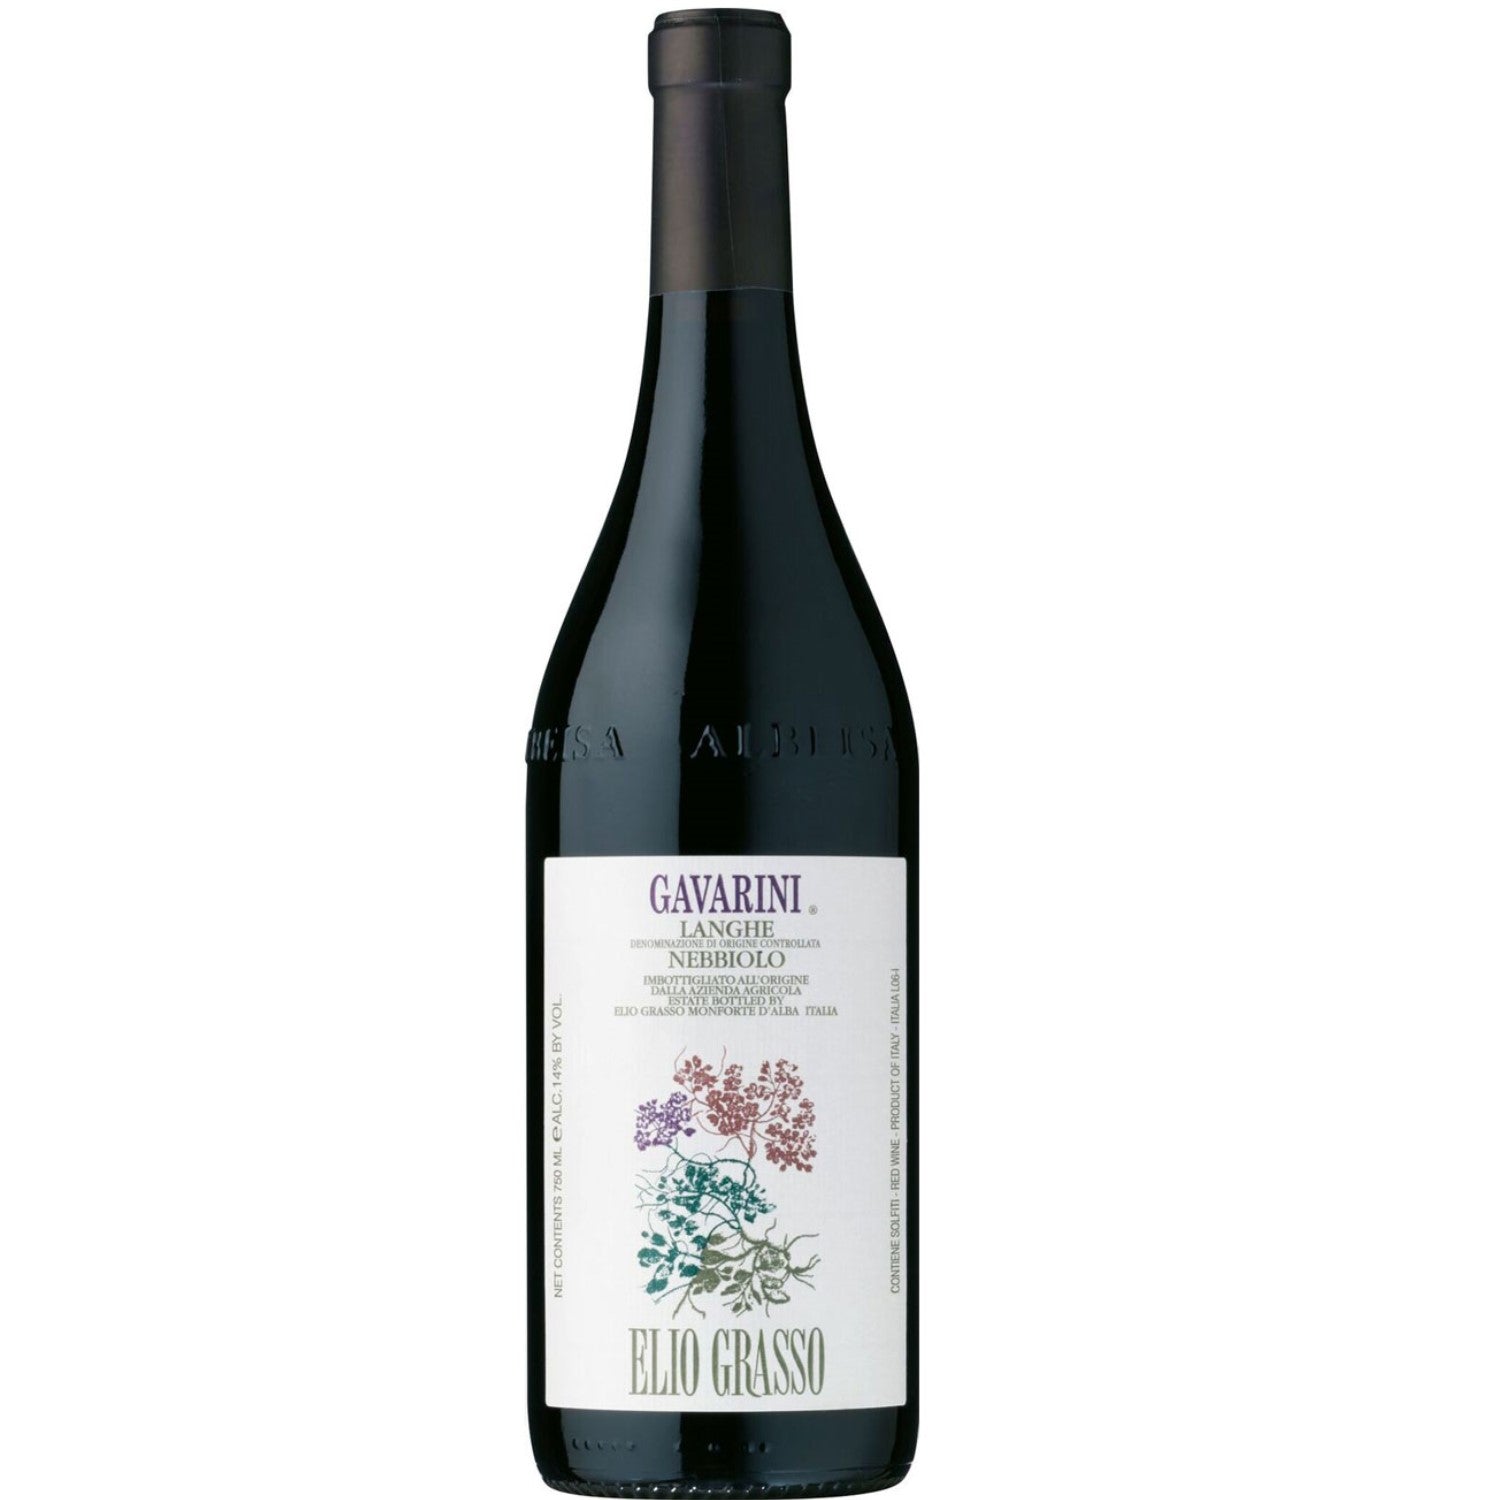 Elio Grasso Gavarini Langhe Nebbiolo Rotwein Wein trocken DOC Italien (6 x 0.75l) - Versanel -